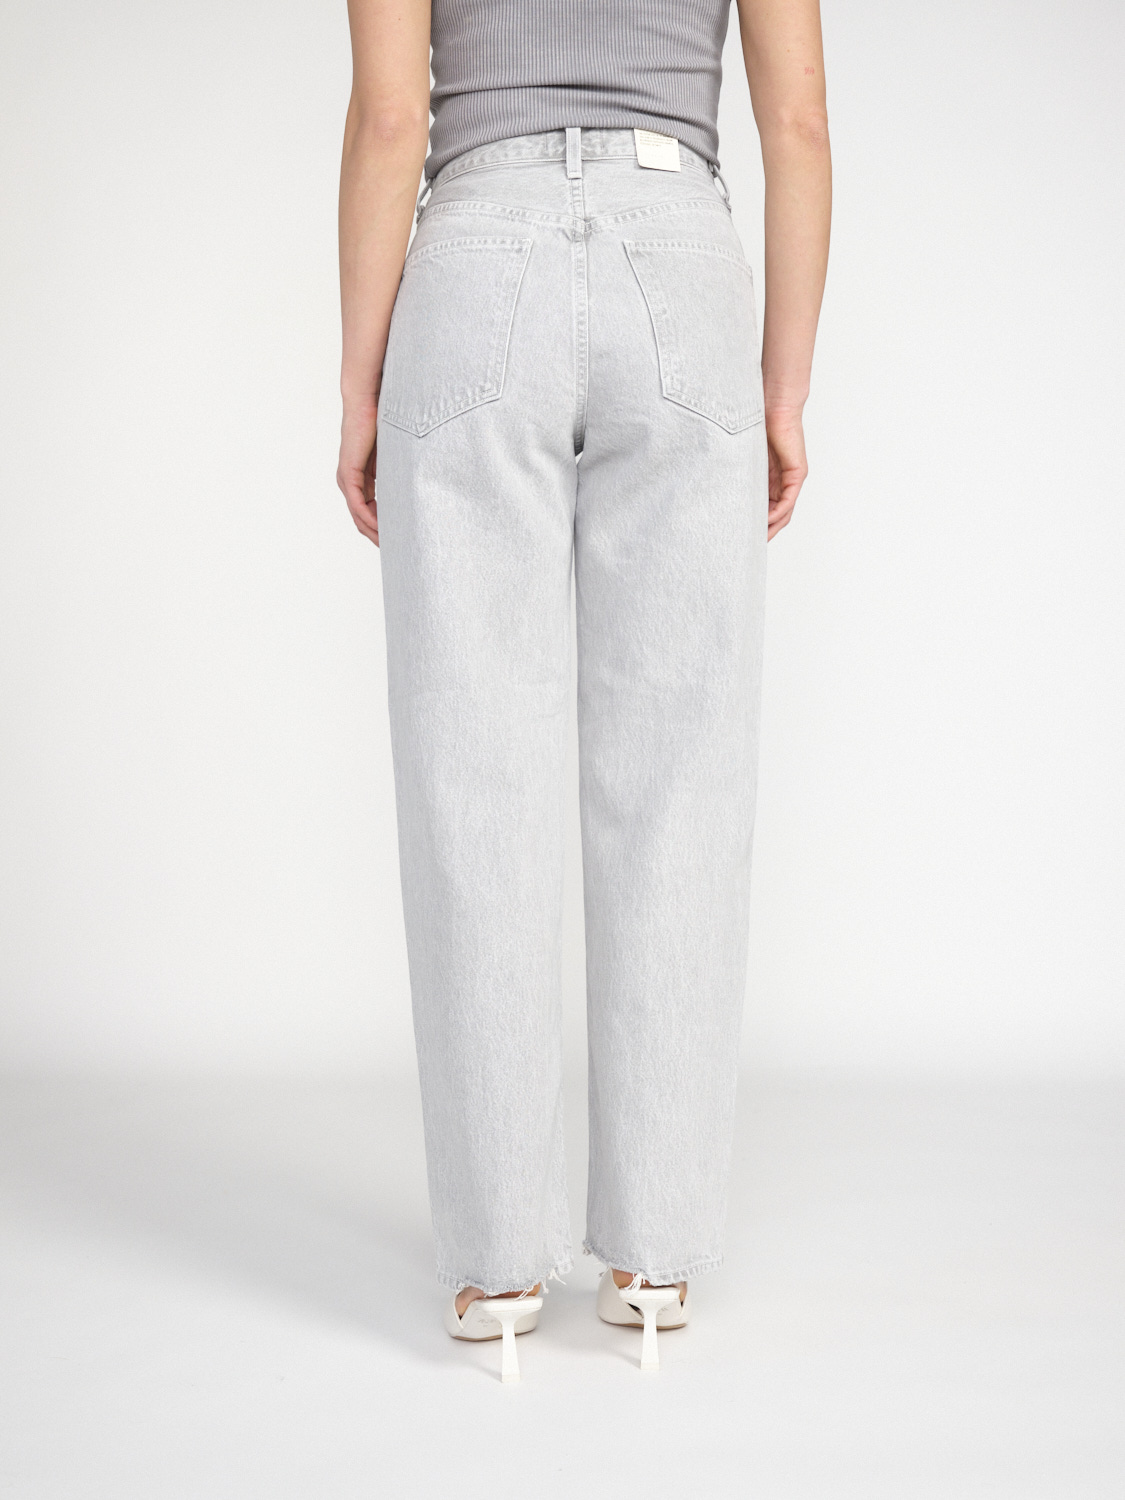 Agolde Criss Cross - Jeans mom en coton avec fermeture en biais grau 25